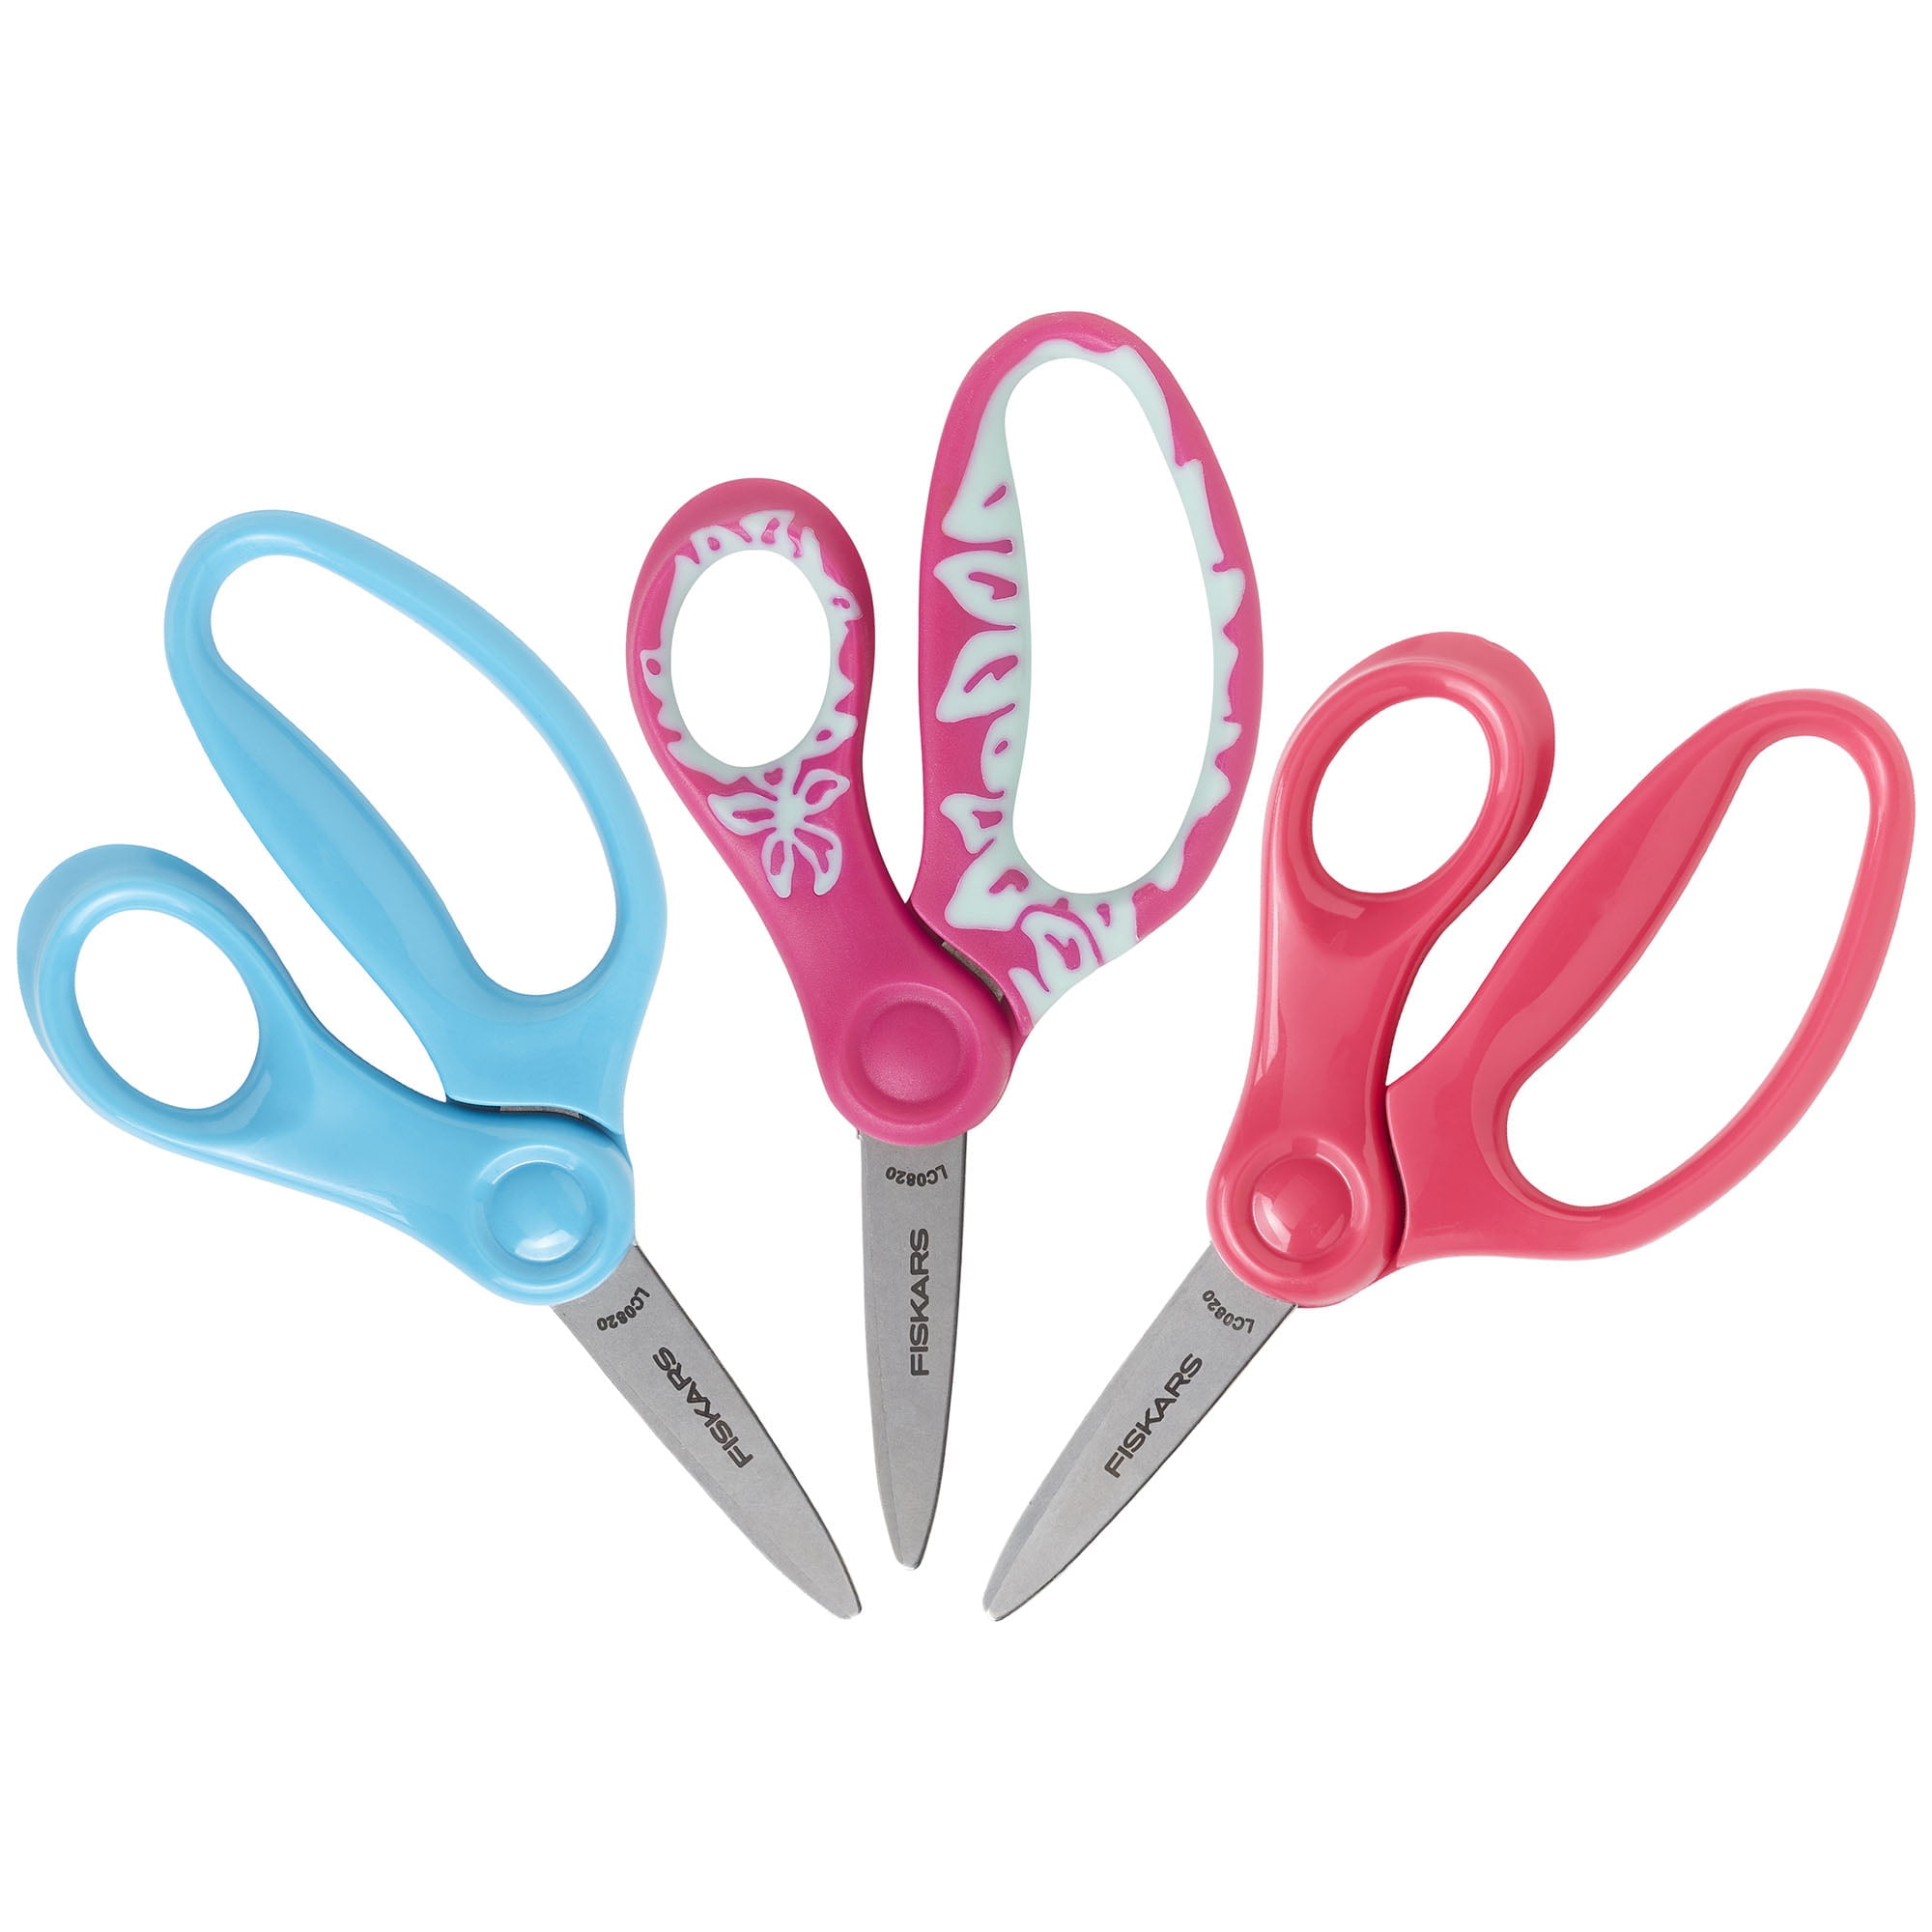 Pink Disney Princess Children's Safety Scissors